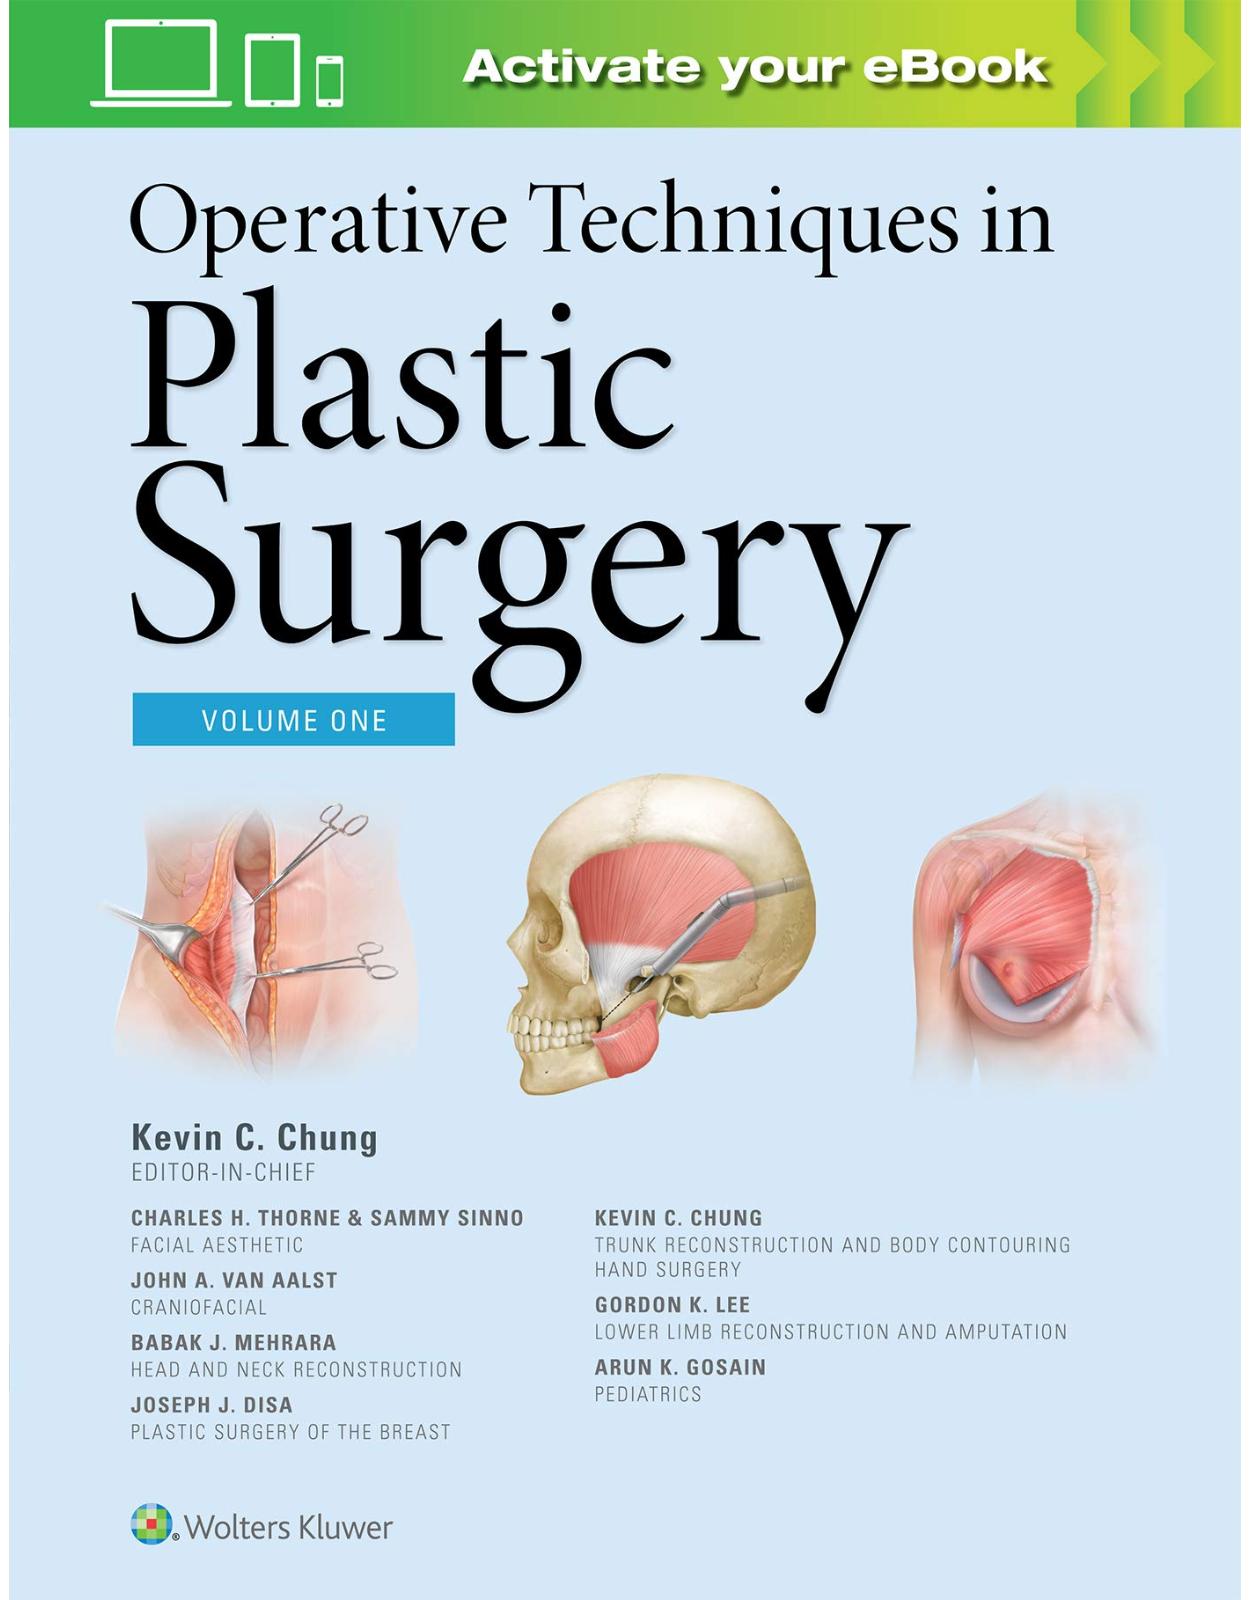 Operative Techniques in Plastic Surgery, 1e, 3 volumes